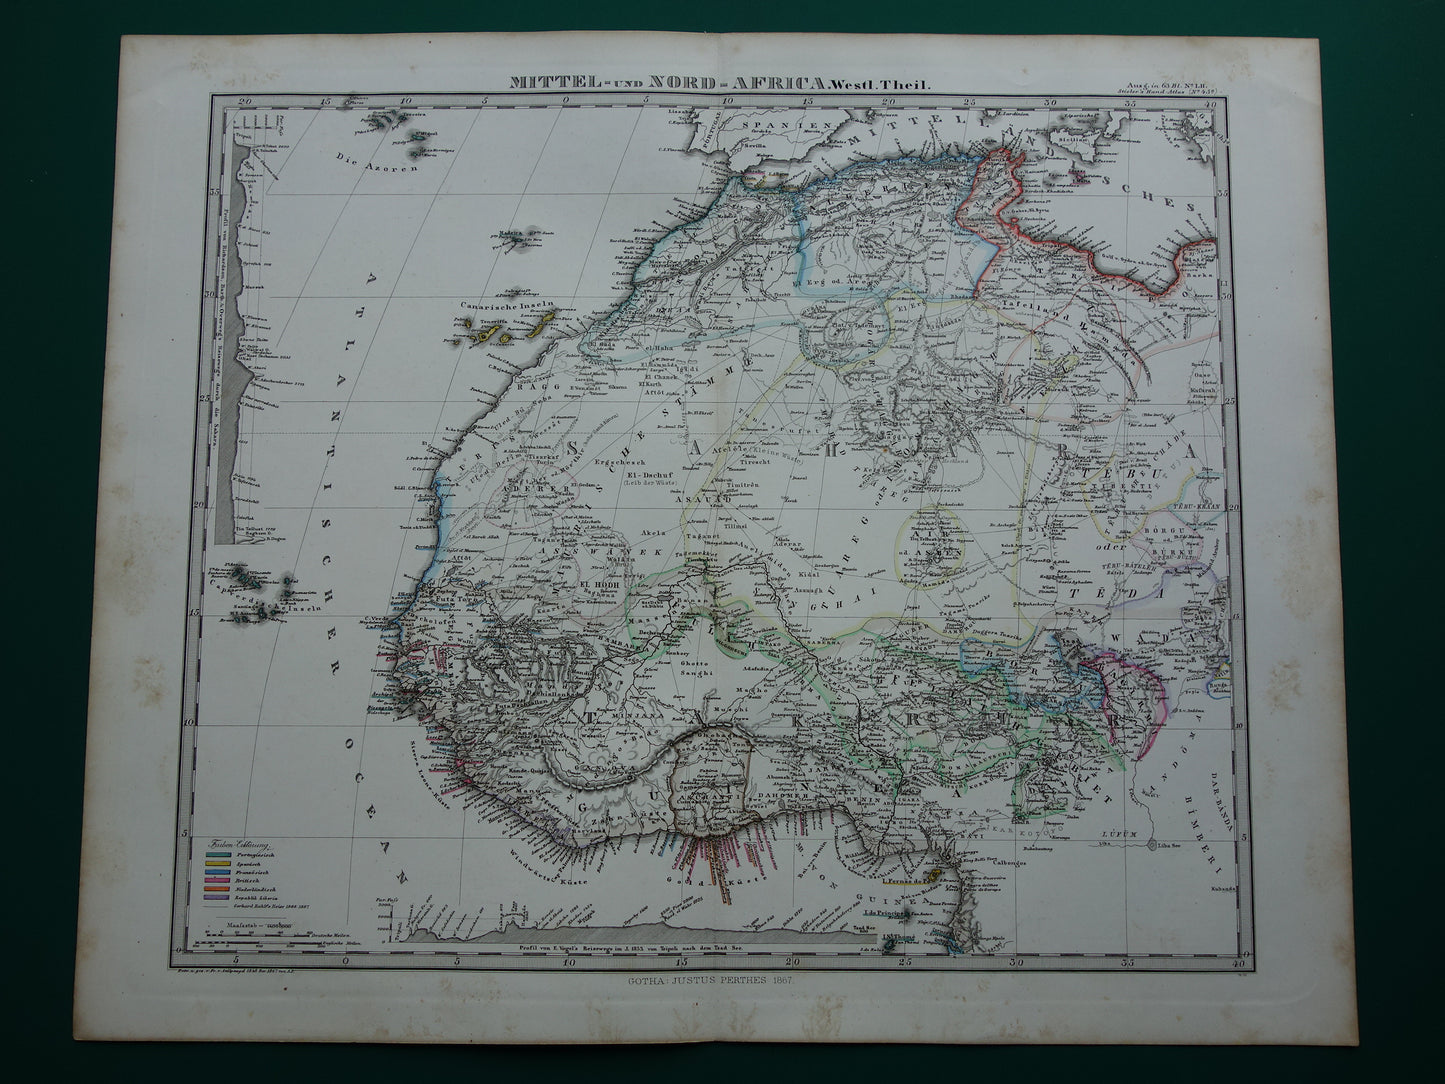 AFRIKA oude land van West-Afrika en Noord-Afrika 155+ jaar oude landkaart van Sahara Marokko Algerije Nigeria Originele vintage kaarten